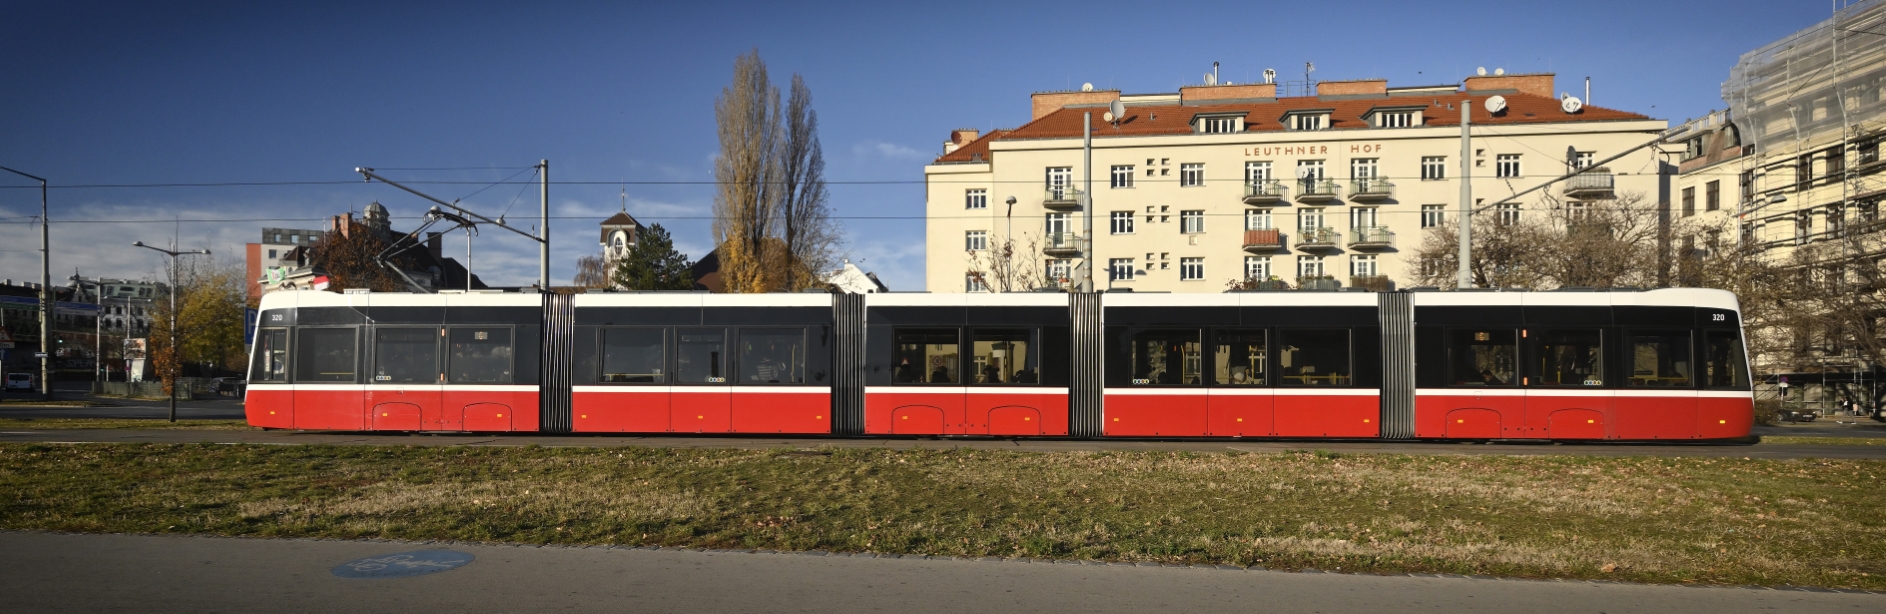 Flexity der Linie 6 nahe der Station Margaretengürtel